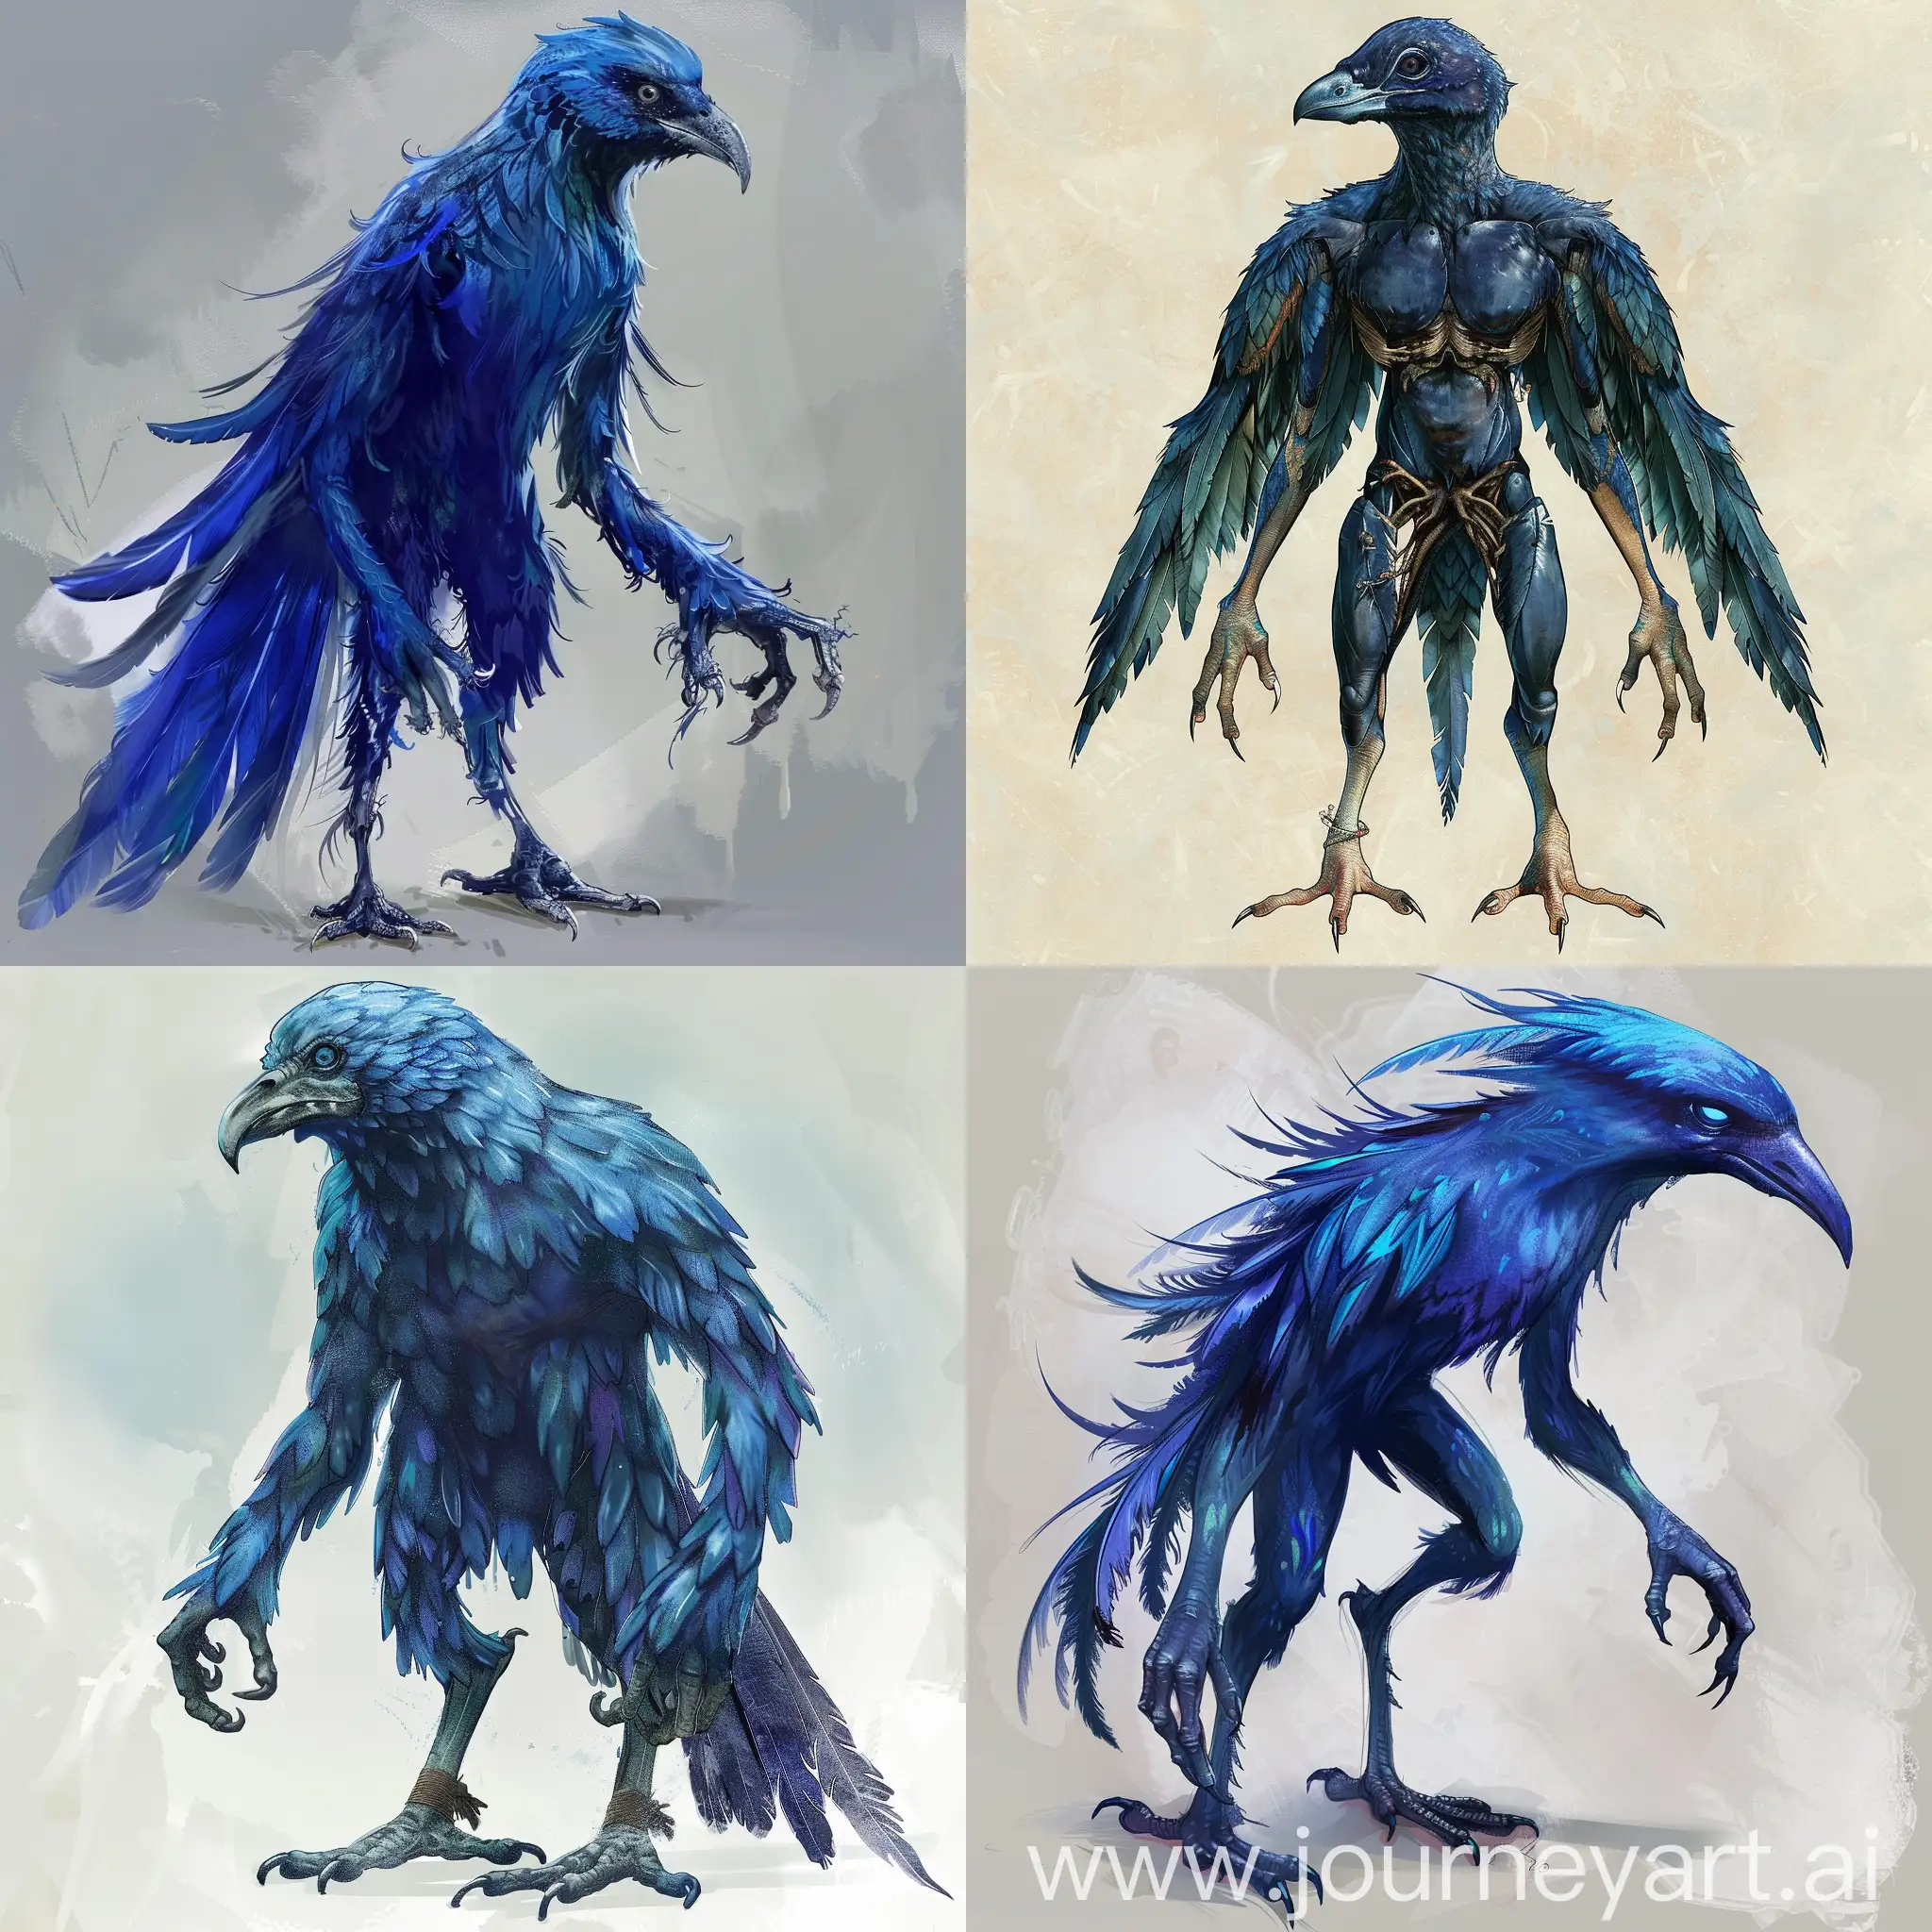 八英尺高，看起来很像鸟，是蓝色或靛蓝色长着羽毛。没有翅膀。有很像人的身躯、手臂、手掌、脚、